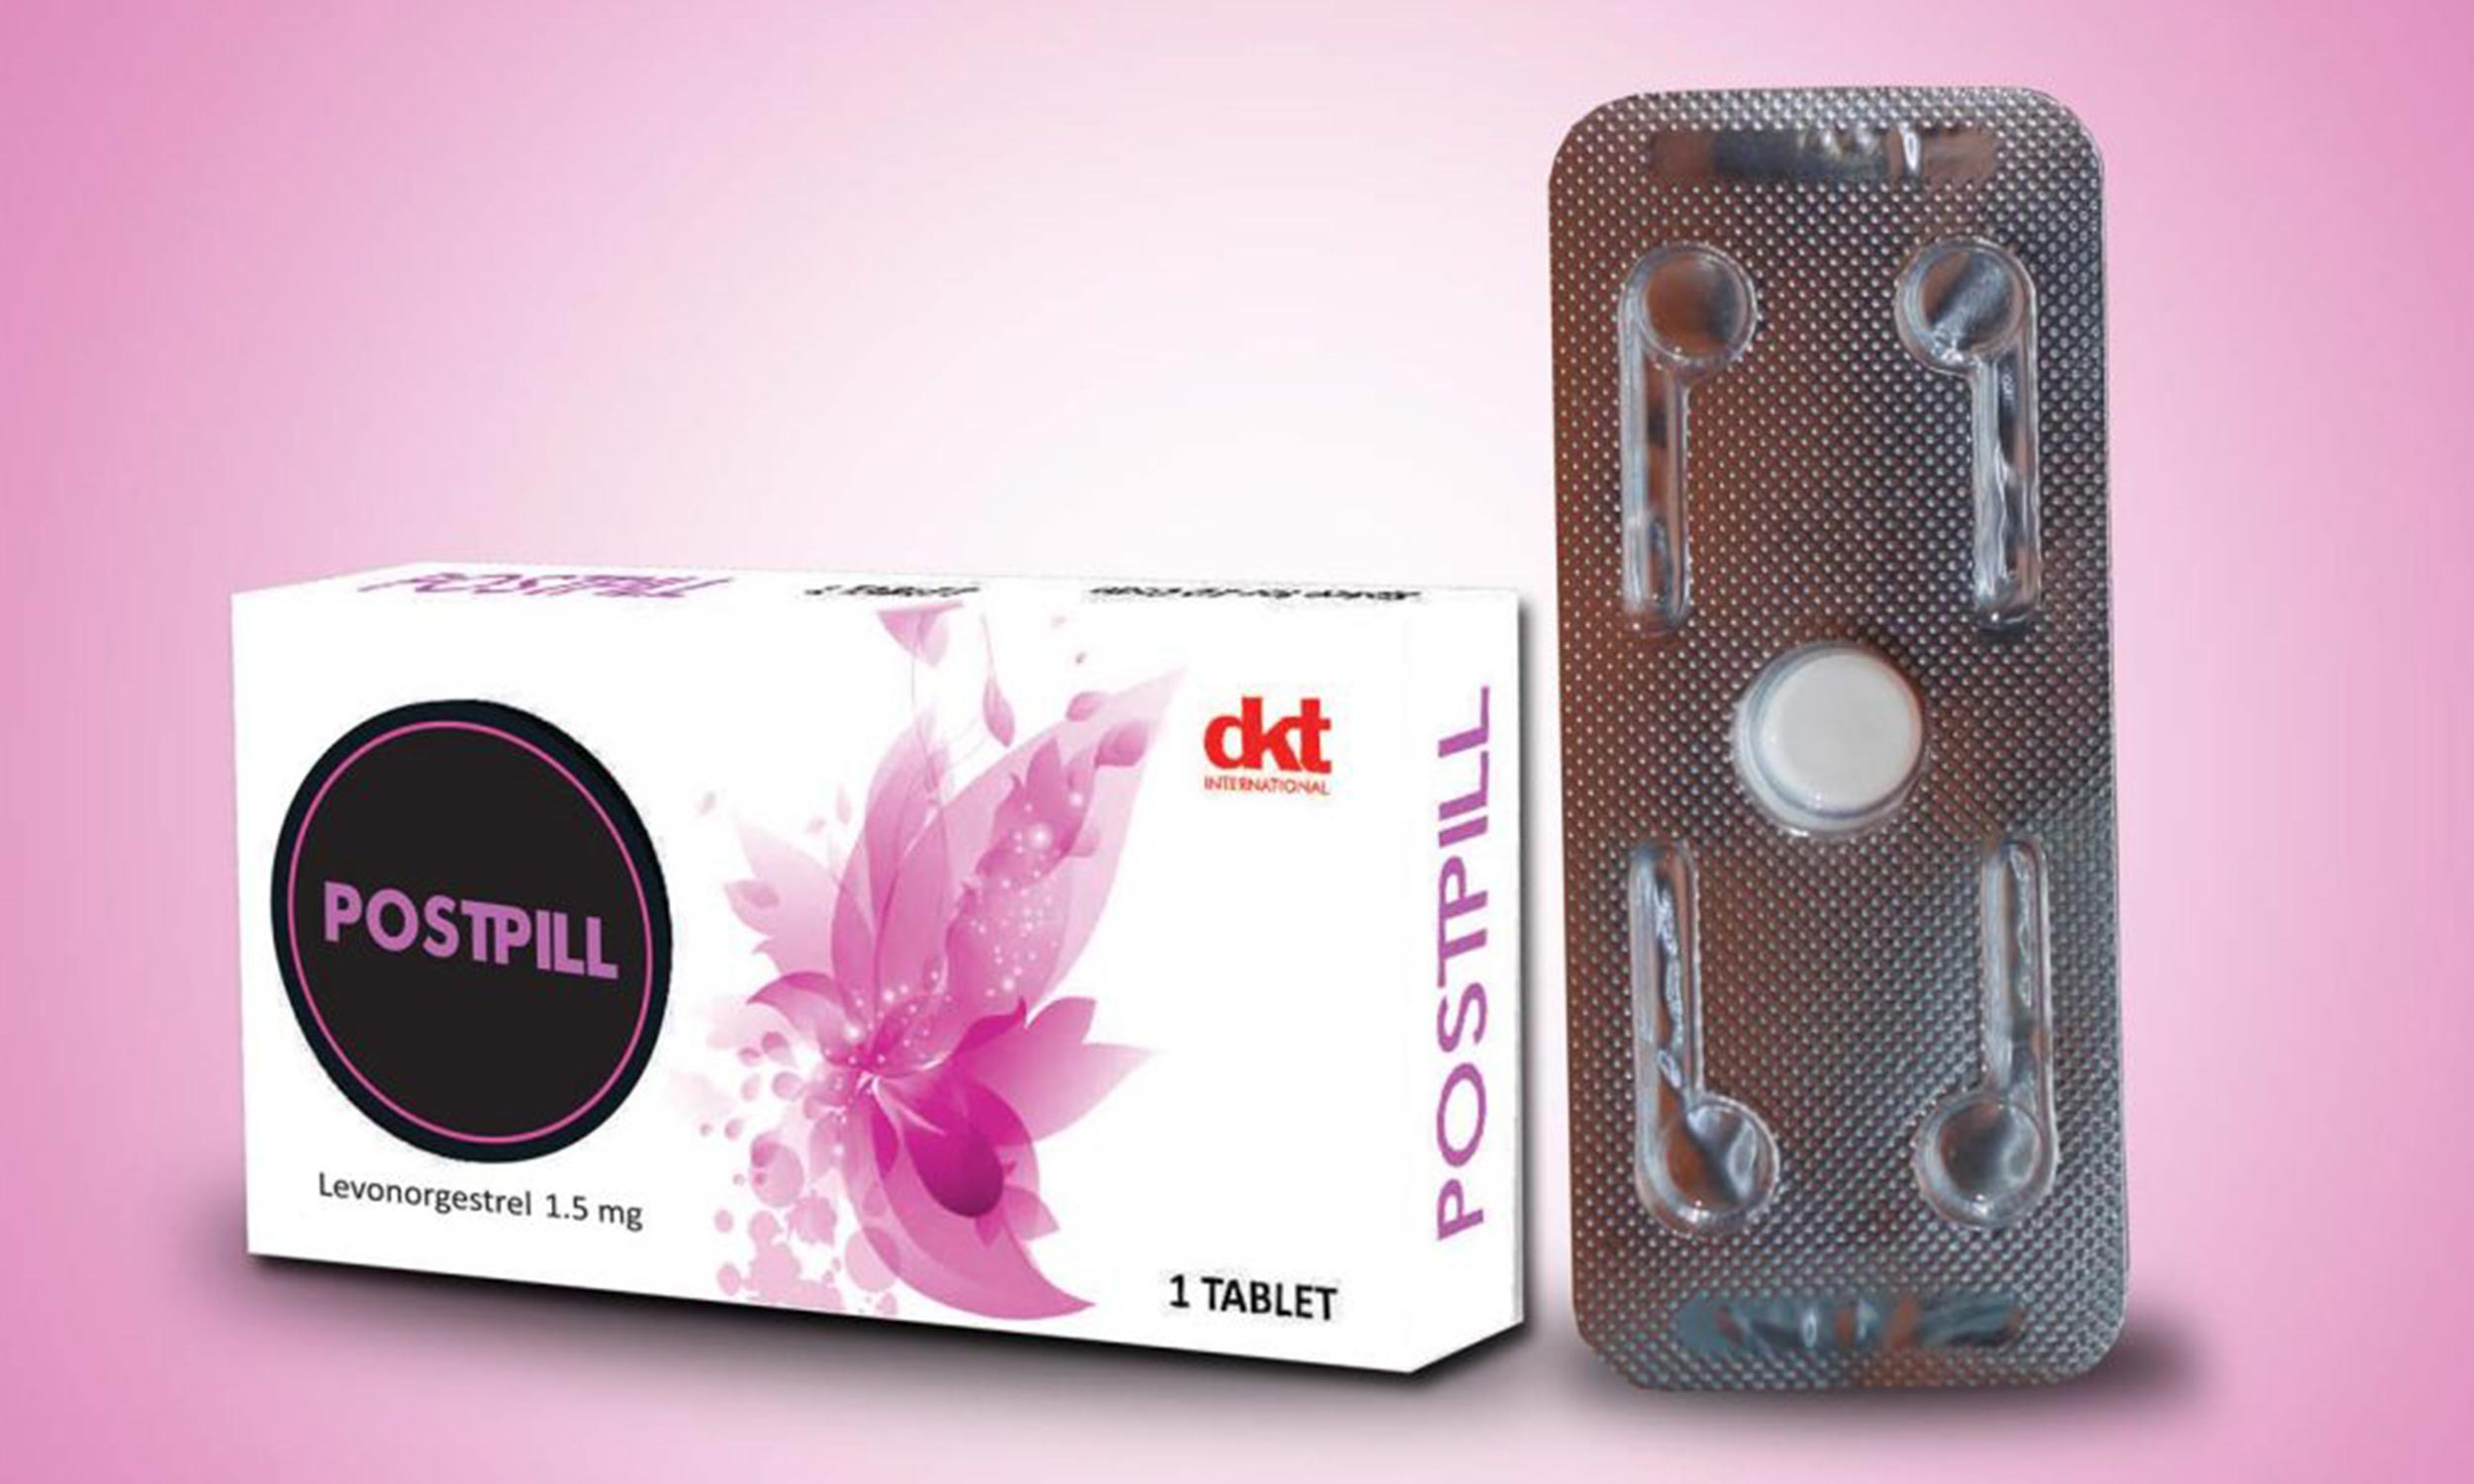 Post pill – Marvicani Pharmacy